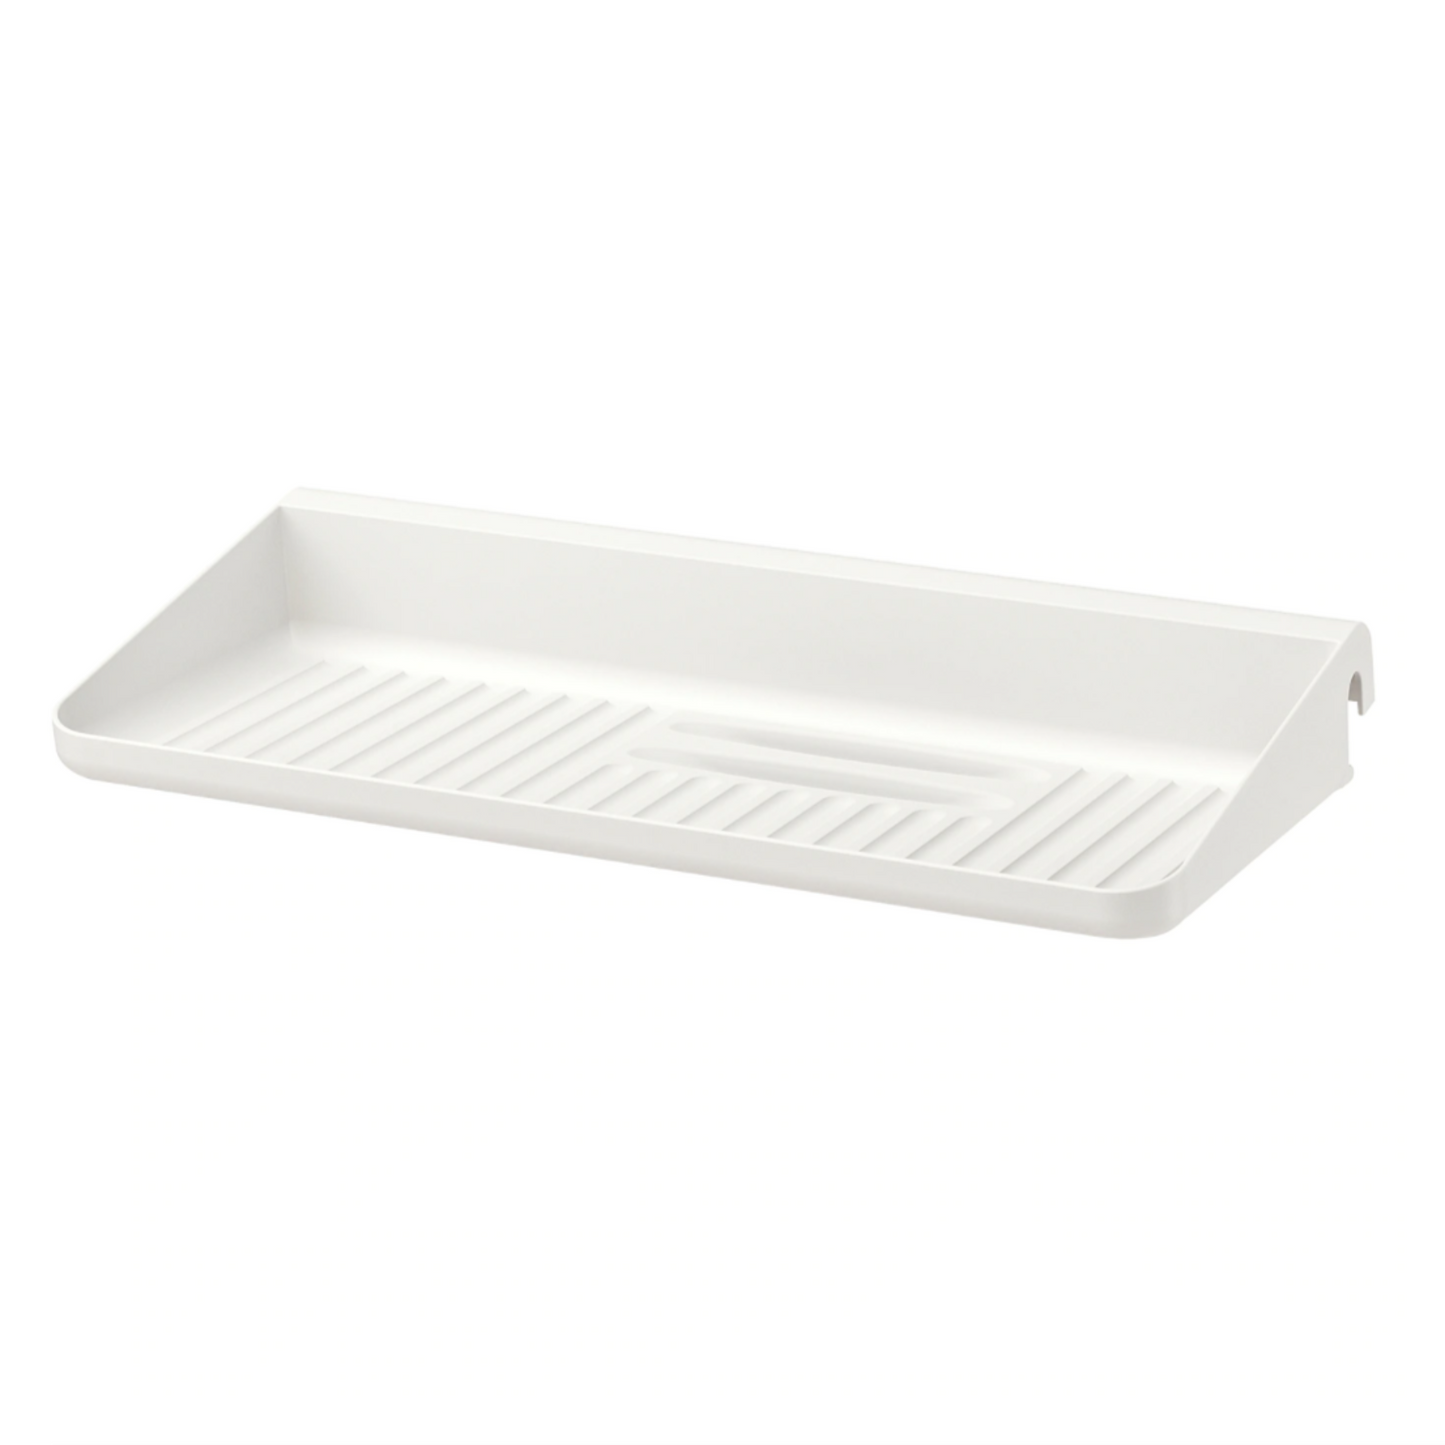 IKEA Sunnersta Shelf/Dish Drainer (4616886976577)